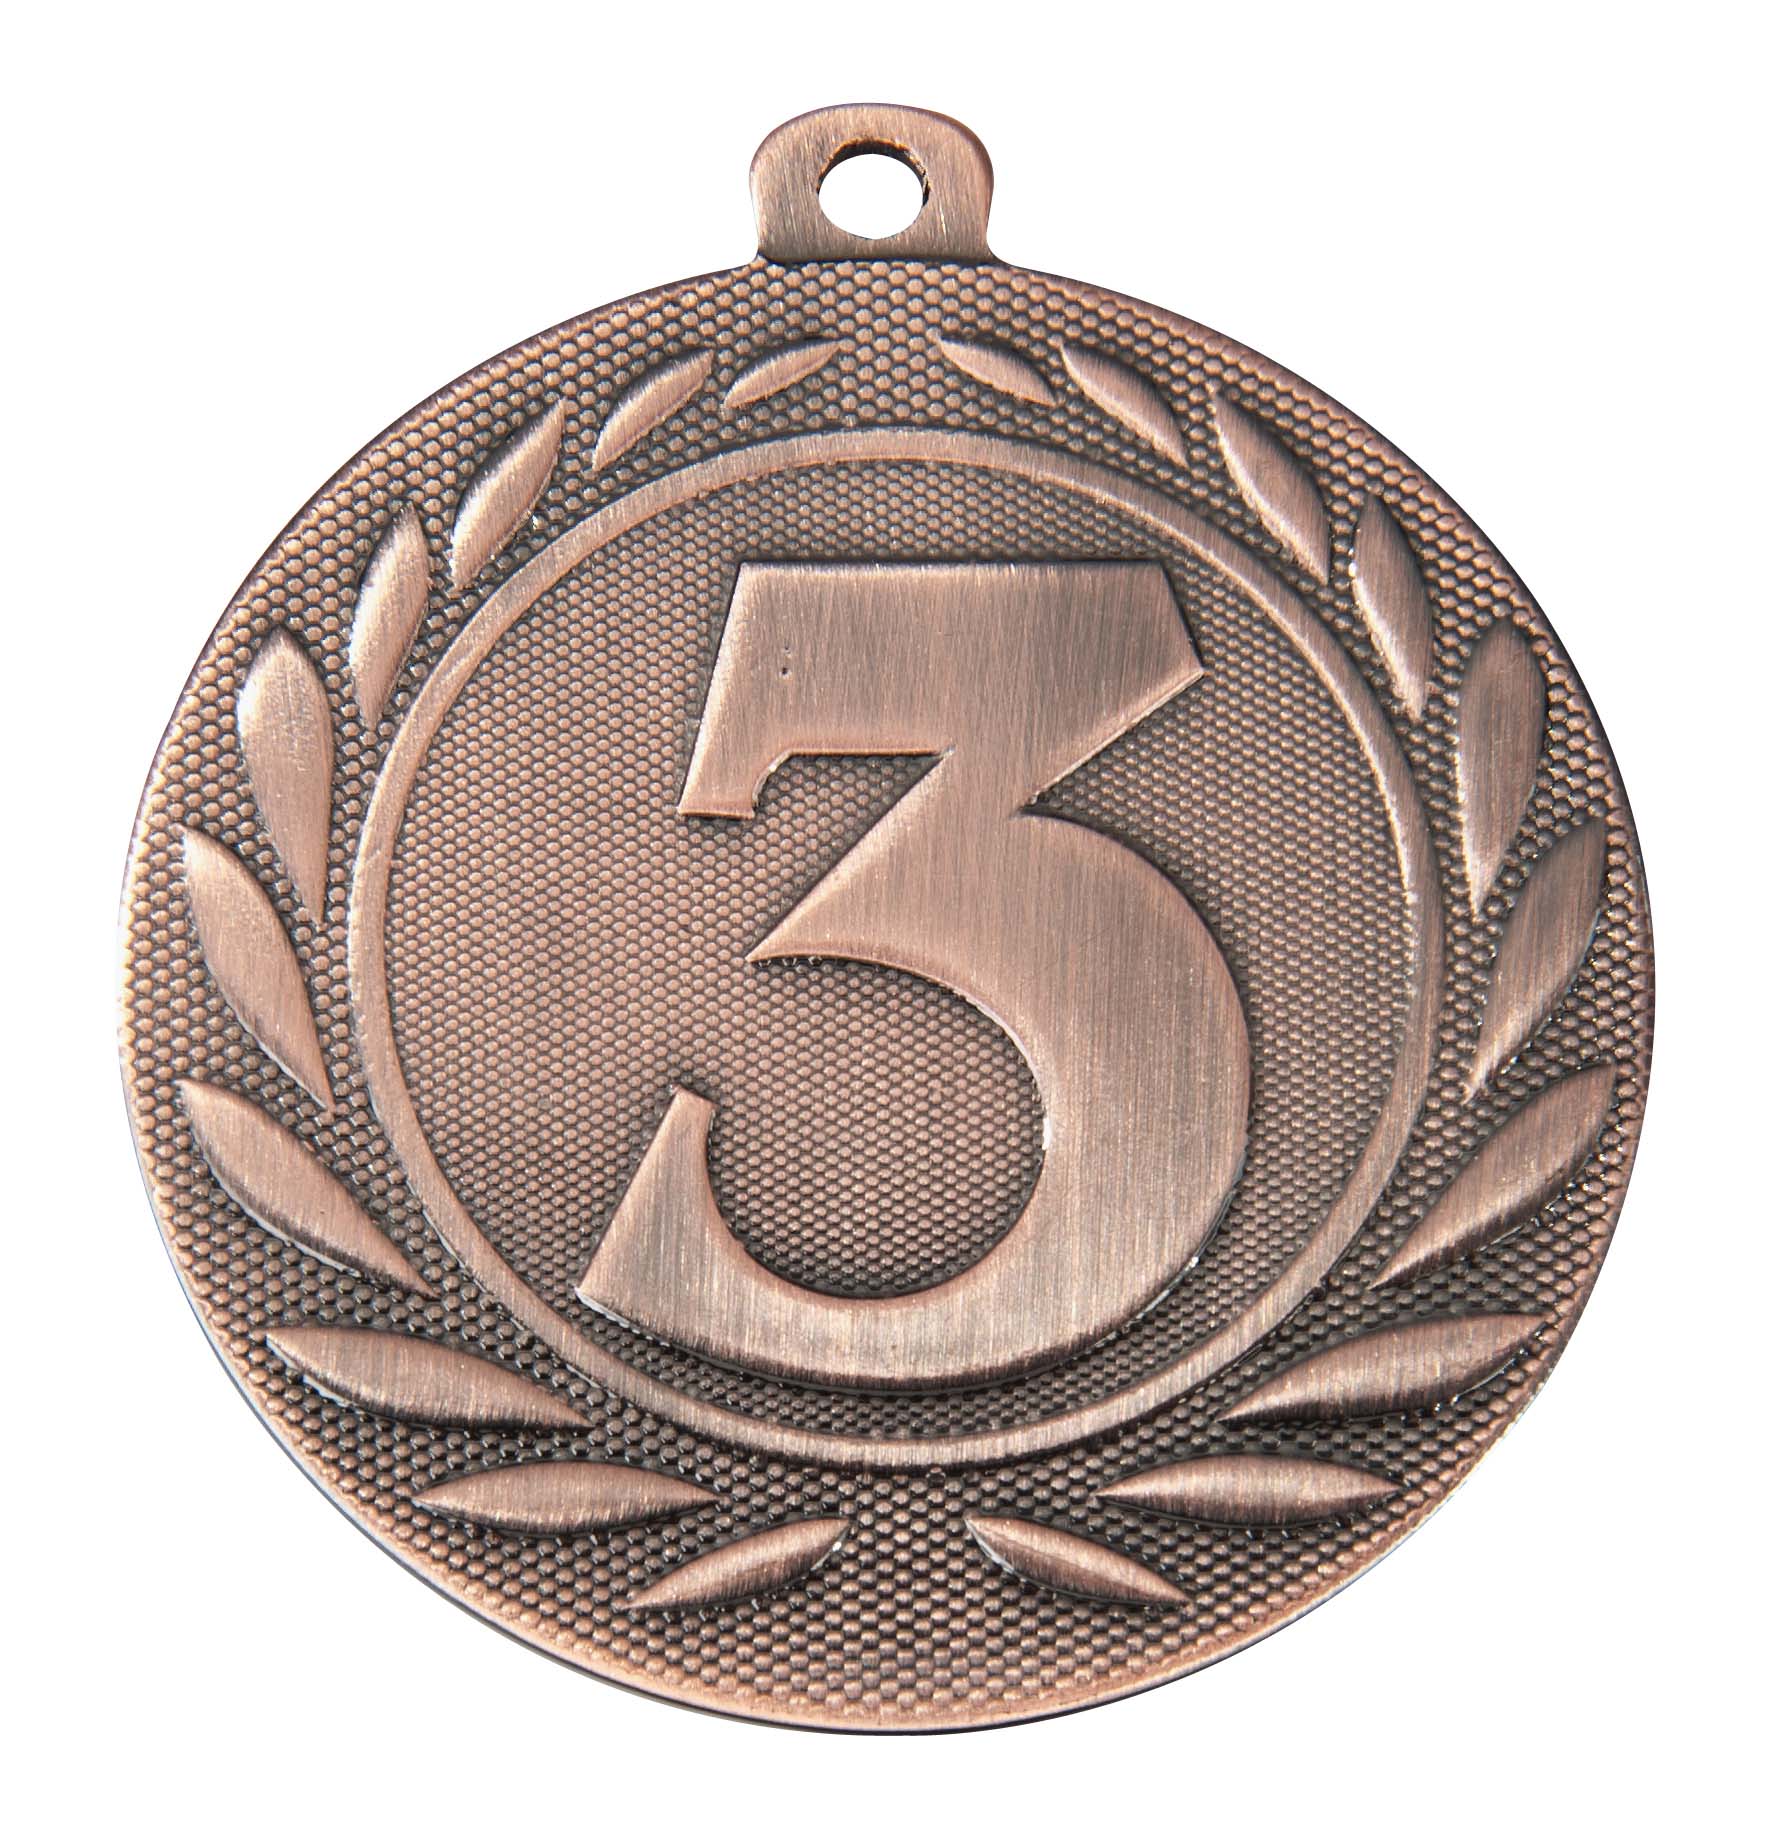 Medaille DI5000D inkl. Band und Beschriftung Bronze Fertig montiert gegen Aufpreis